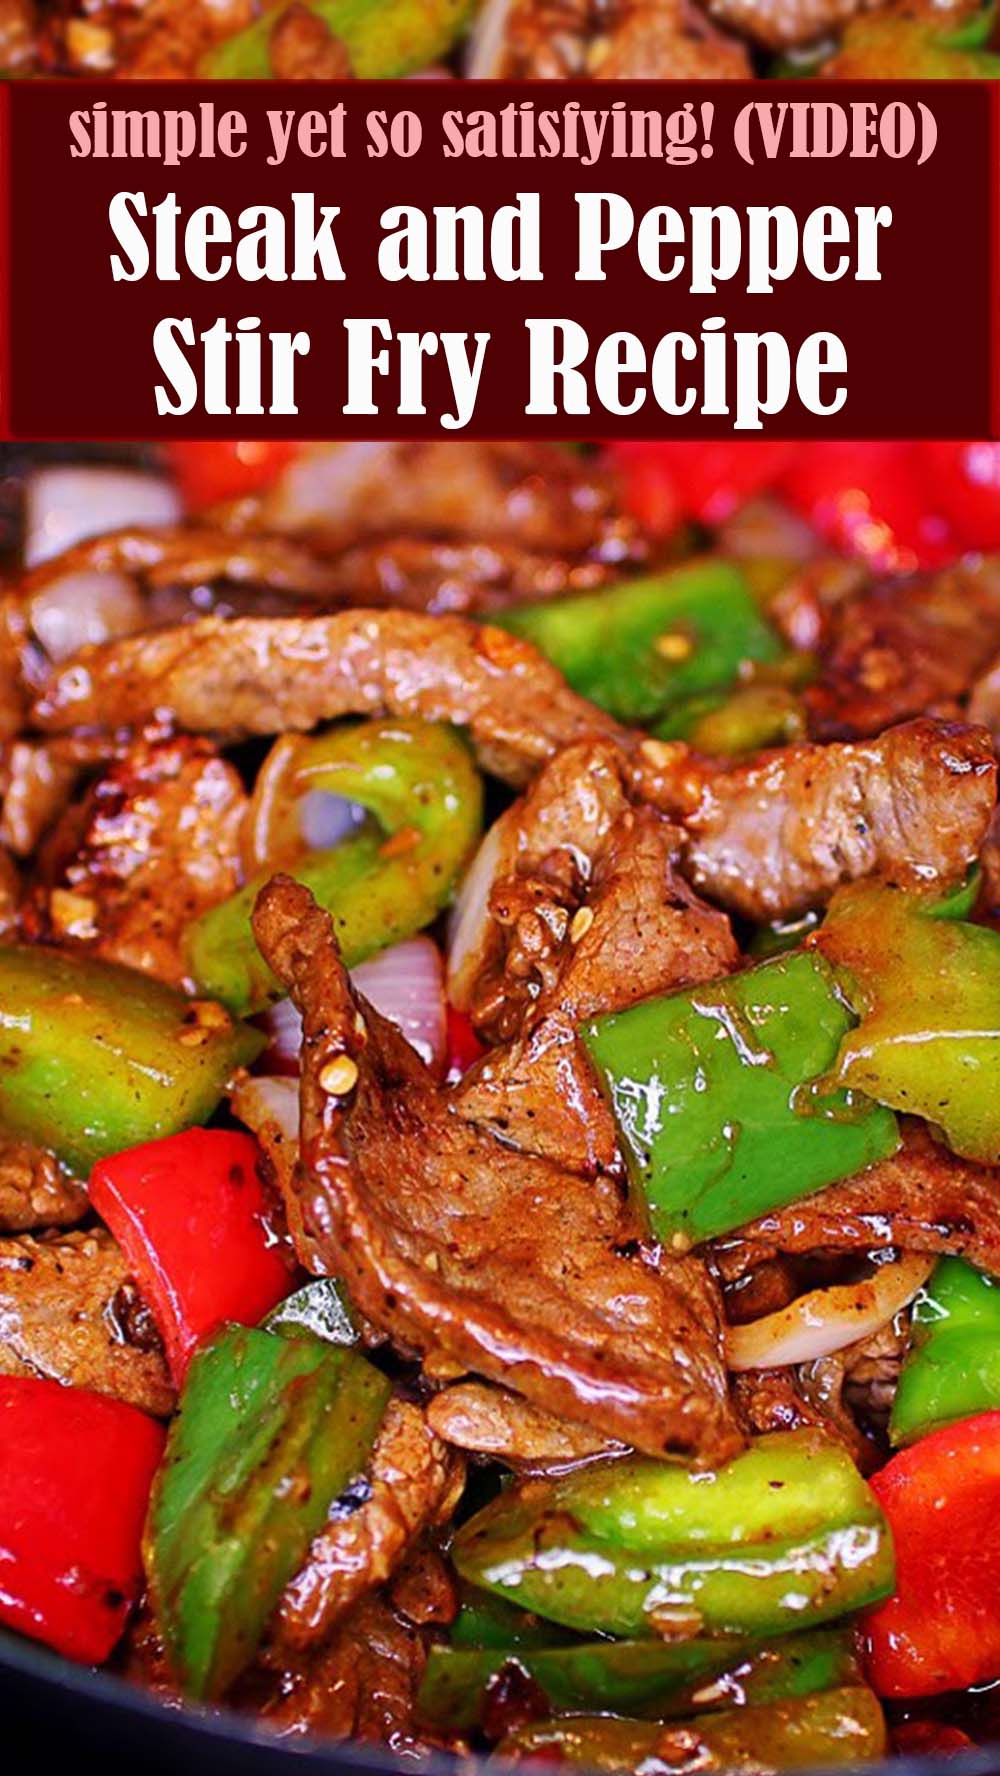 Steak and Pepper Stir Fry Recipe